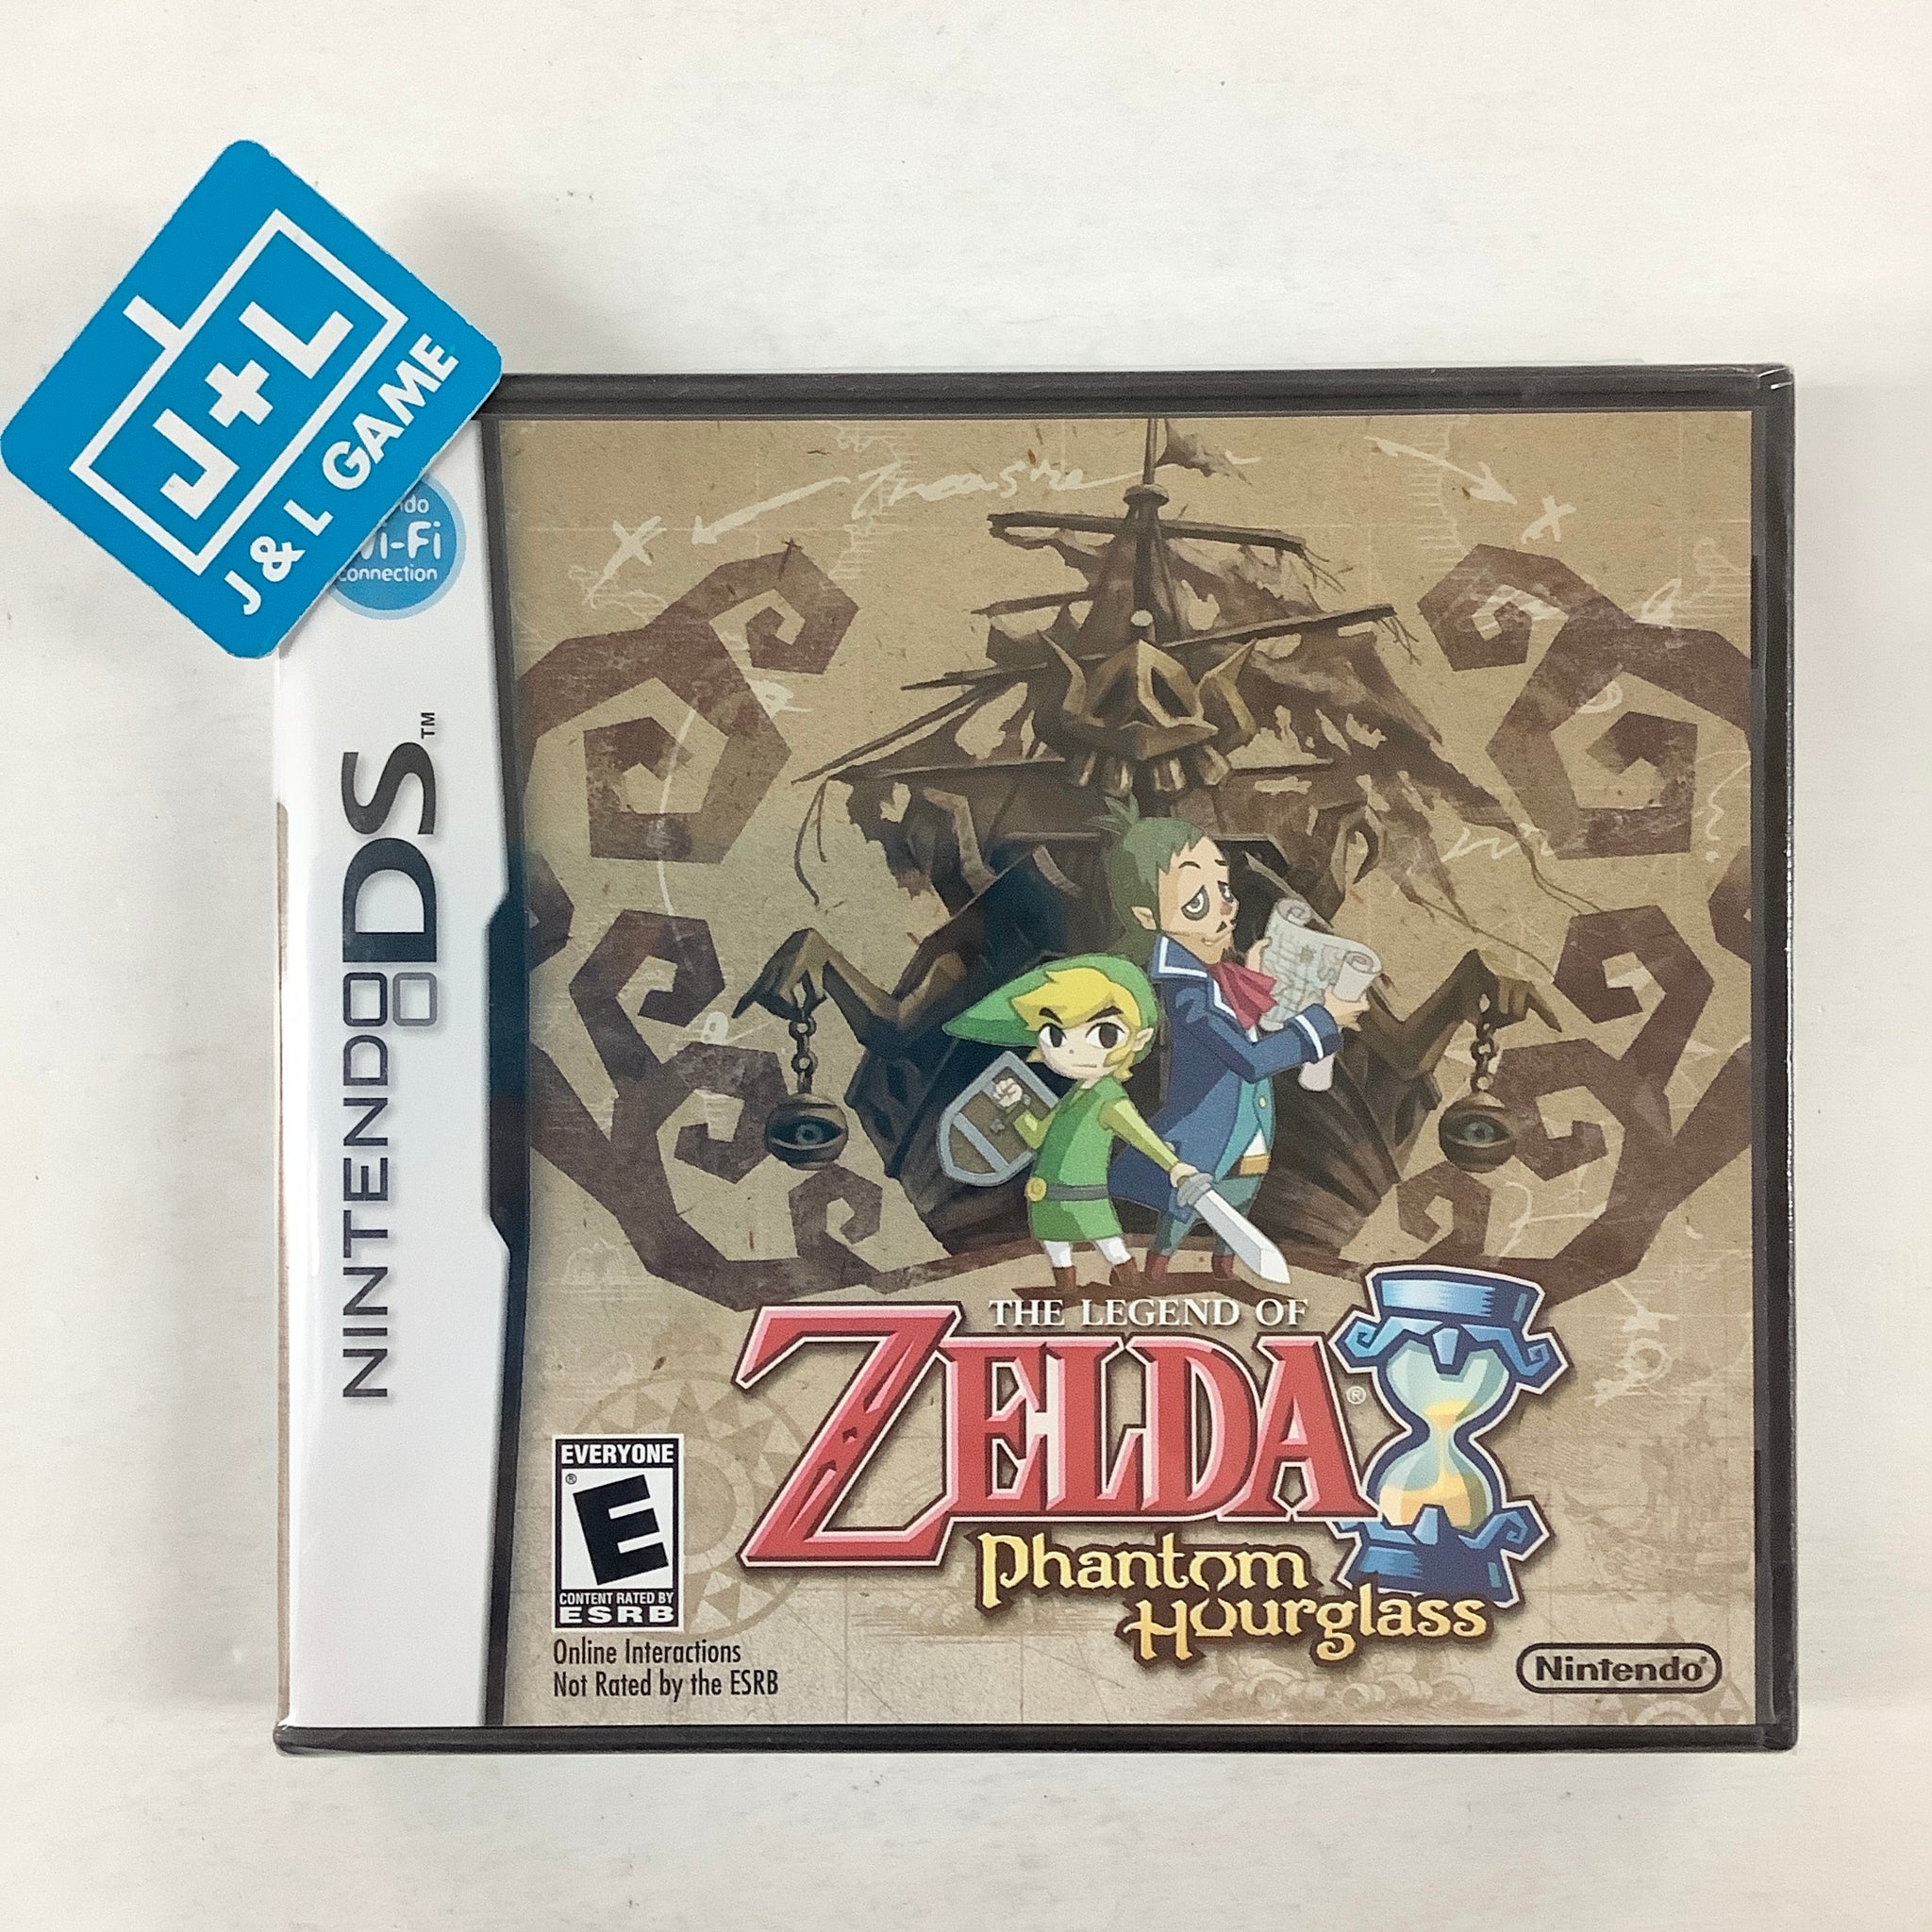 The Legend of Zelda: Phantom Hourglass for Nintendo DS